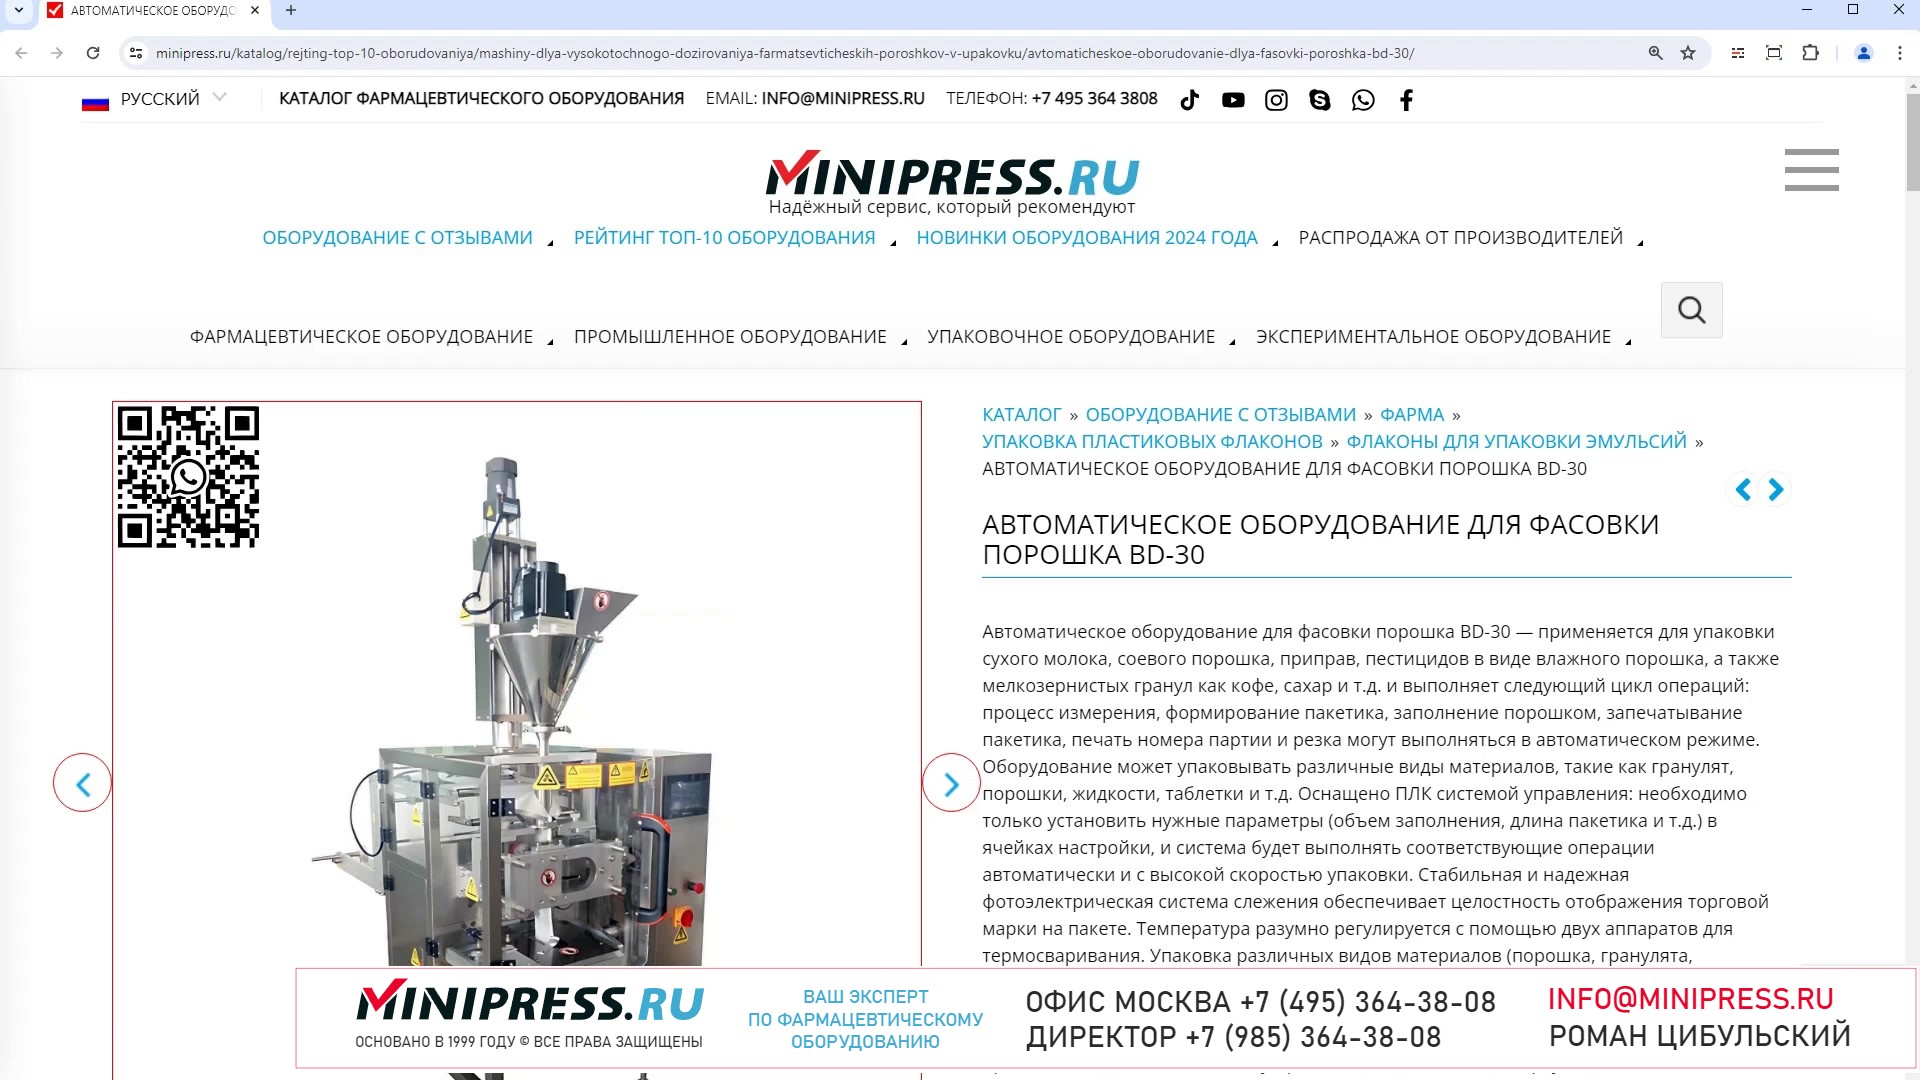 Minipress.ru Автоматическое оборудование для фасовки порошка BD-30